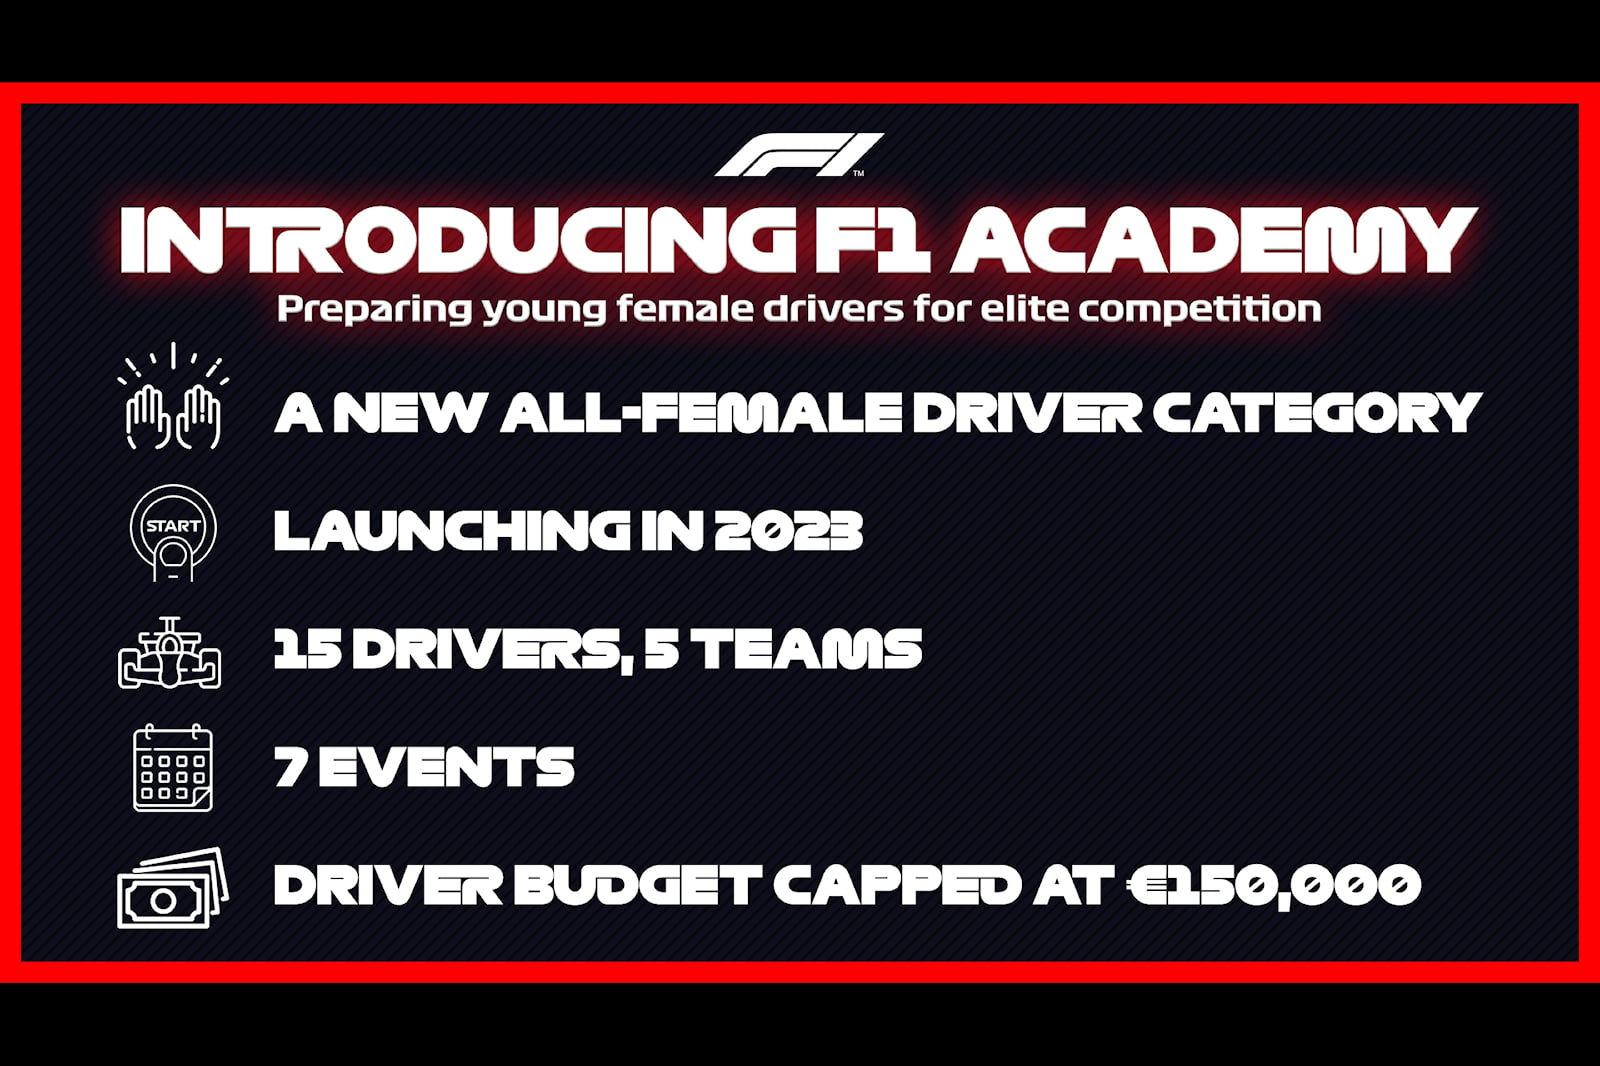 В пятницу Формула-1 объявила о новой женской серии под названием F1 Academy. Целью новой серии будет помочь лучше подготовить женщин-гонщиков к переходу на более высокие уровни гонок. Чтобы было ясно, это не заменит ни одну из текущих женских гоночны